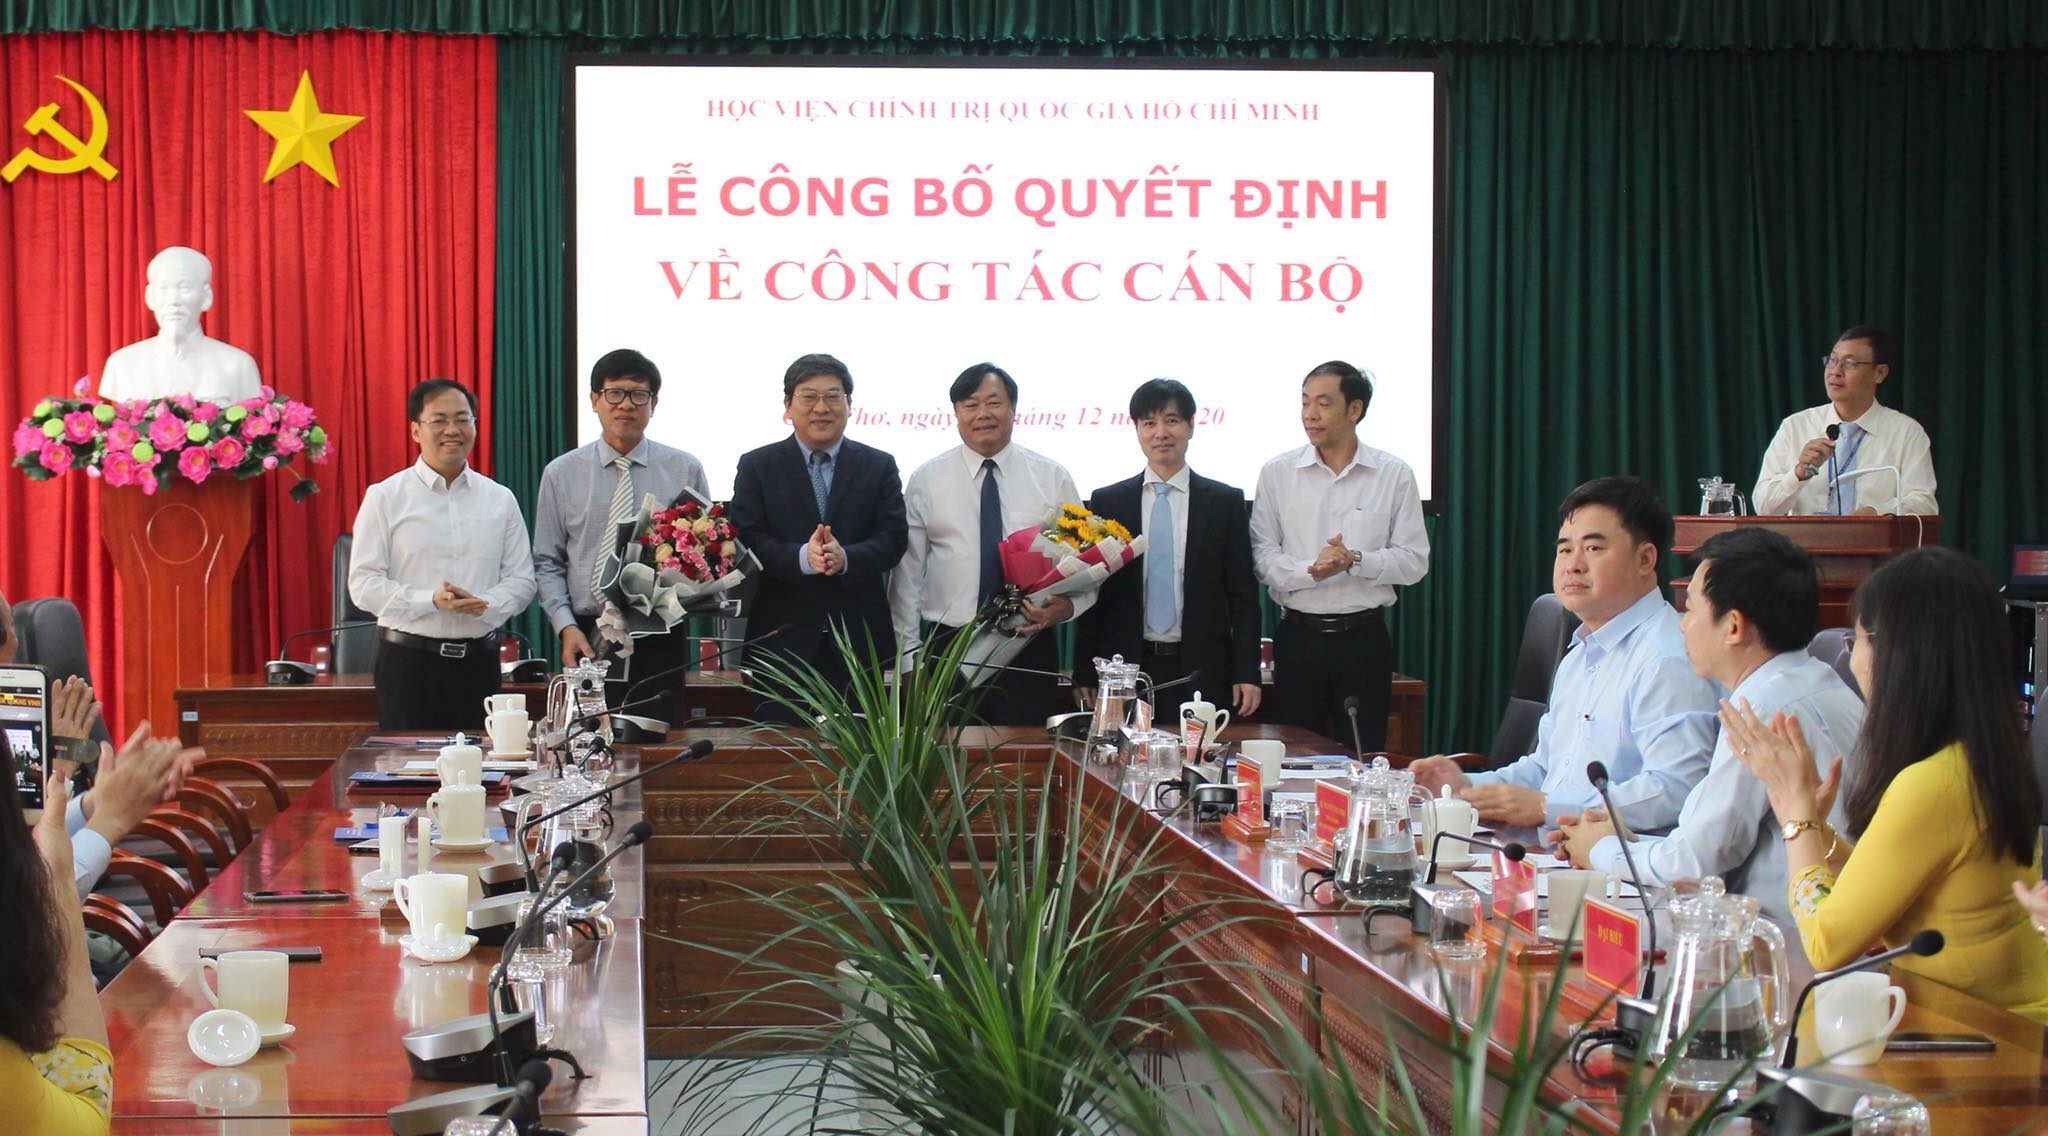 Bổ nhiệm nhân sự Viện KSND tối cao, Học viện Chính trị Quốc gia Hồ Chí Minh